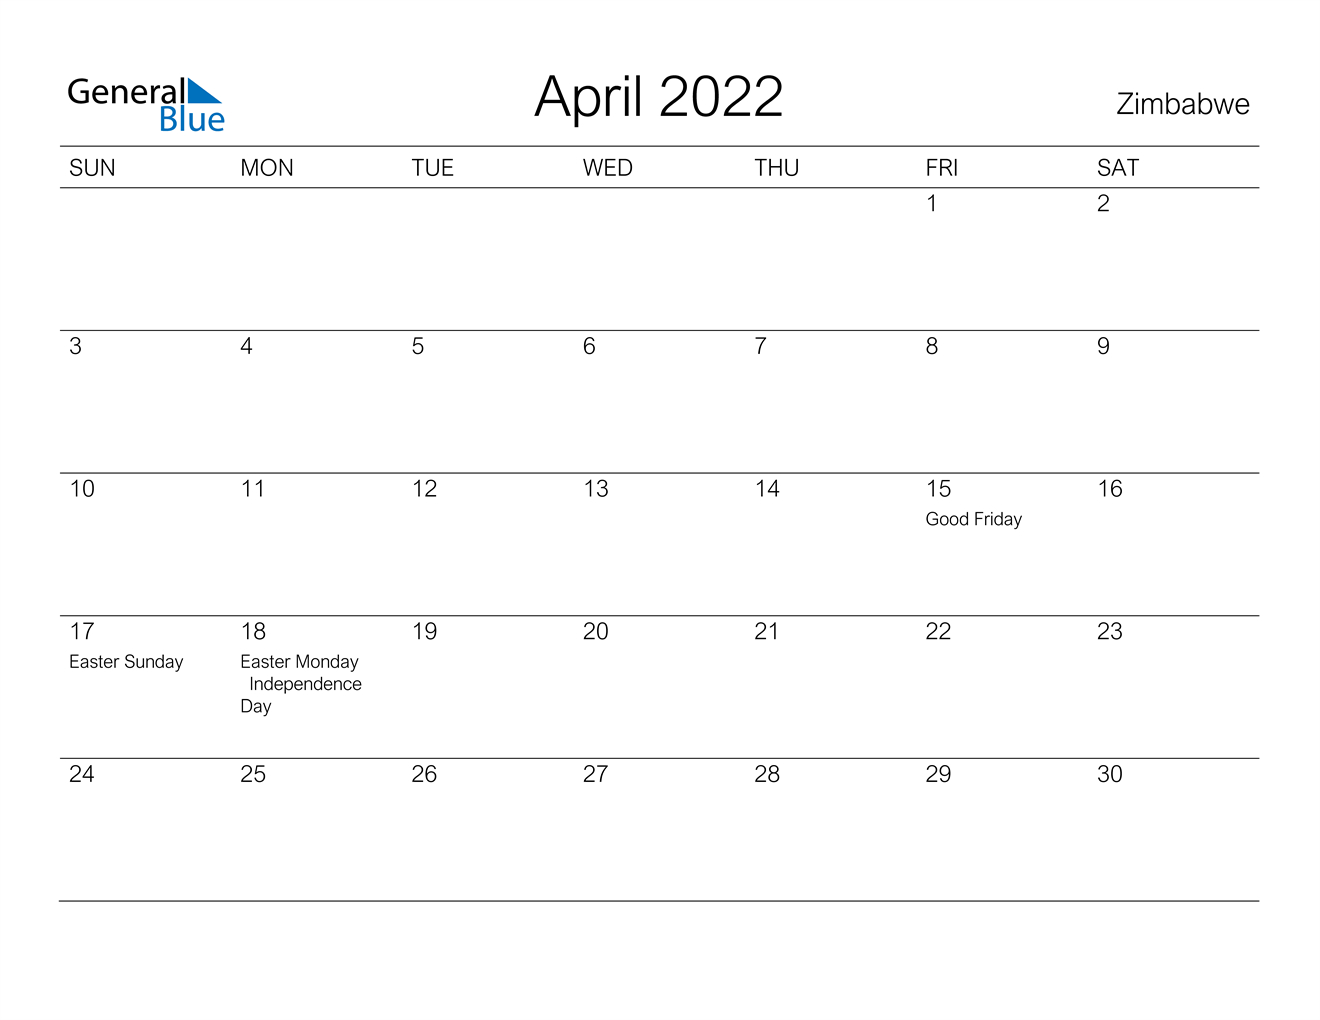 April 2022 Calendar - Zimbabwe